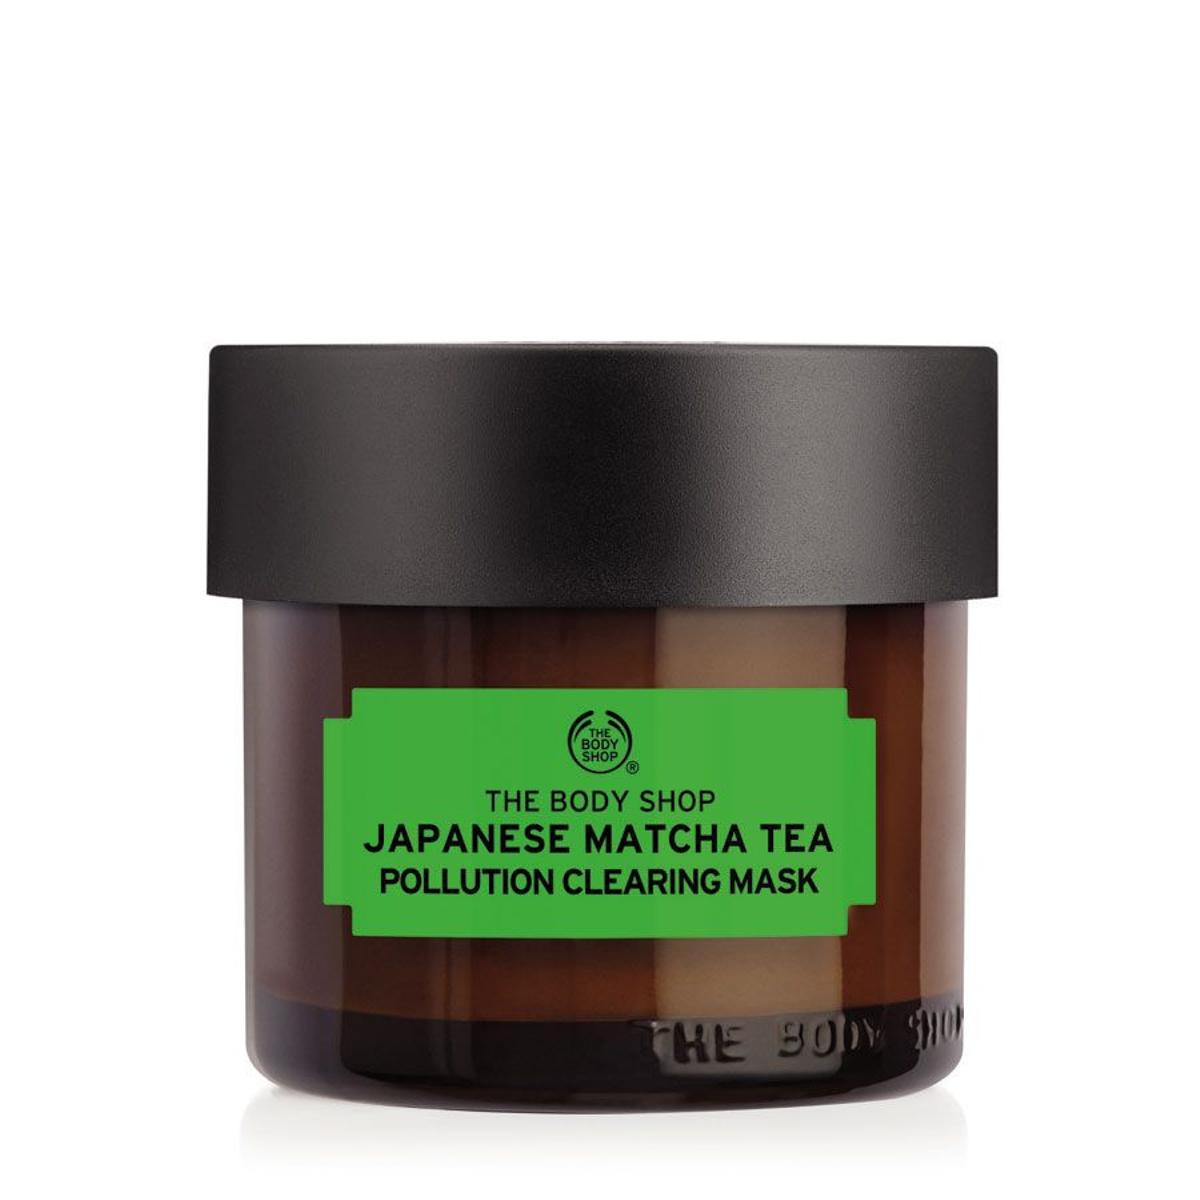 Mascarilla purificante antipolución de té matcha japonés, de The Body Shop